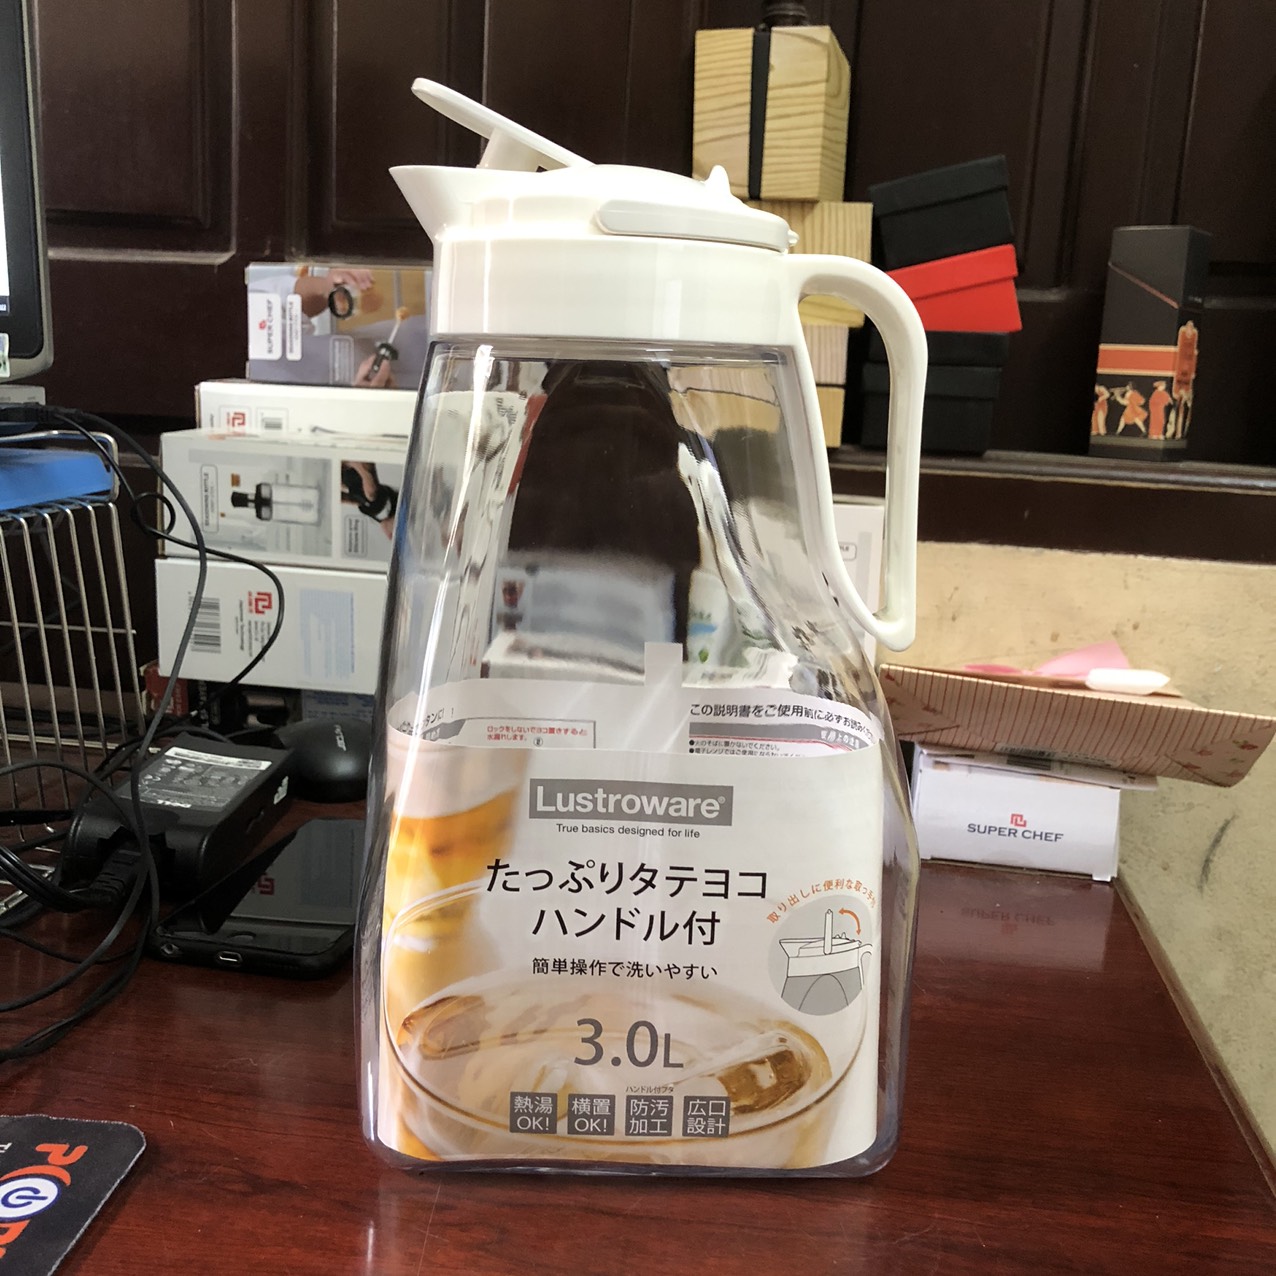 Bình nóng lạnh 3 lít Lustroware Nhật Bản nắp nhấn có khóa chặt, an toàn K-1283NW (Made in Japan)